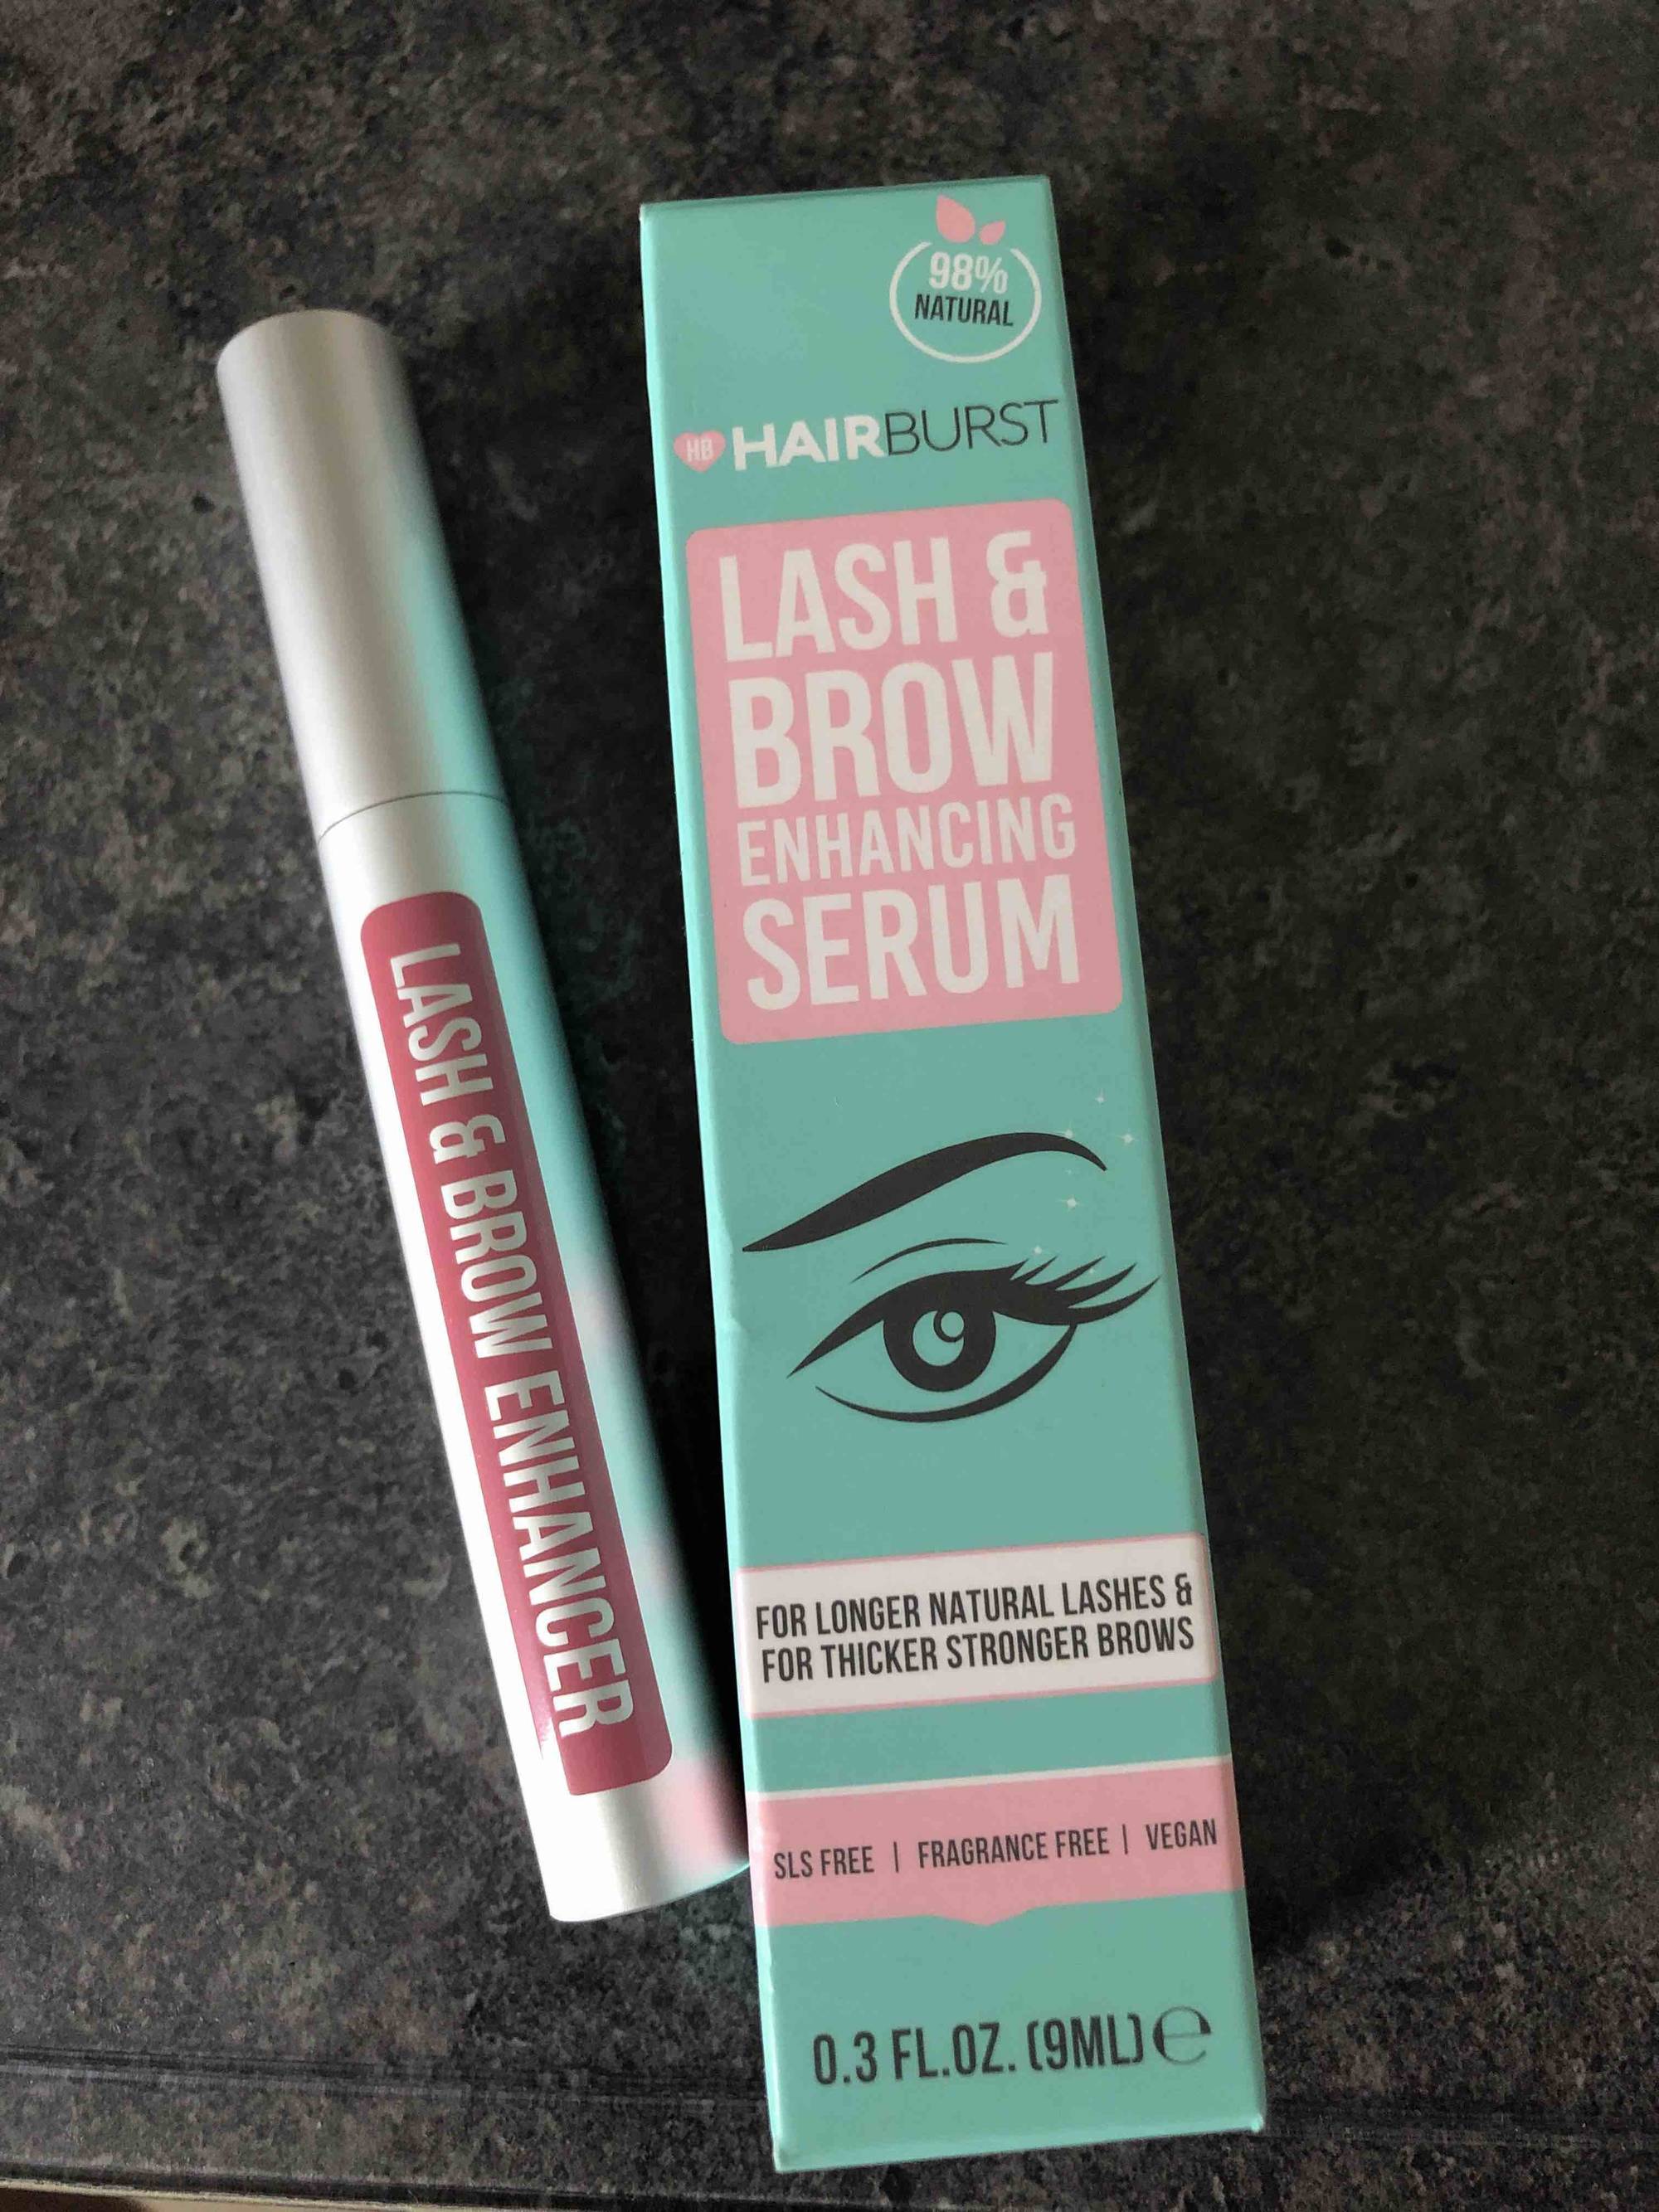 HAIRBURST - Lash & brow enhancing serum